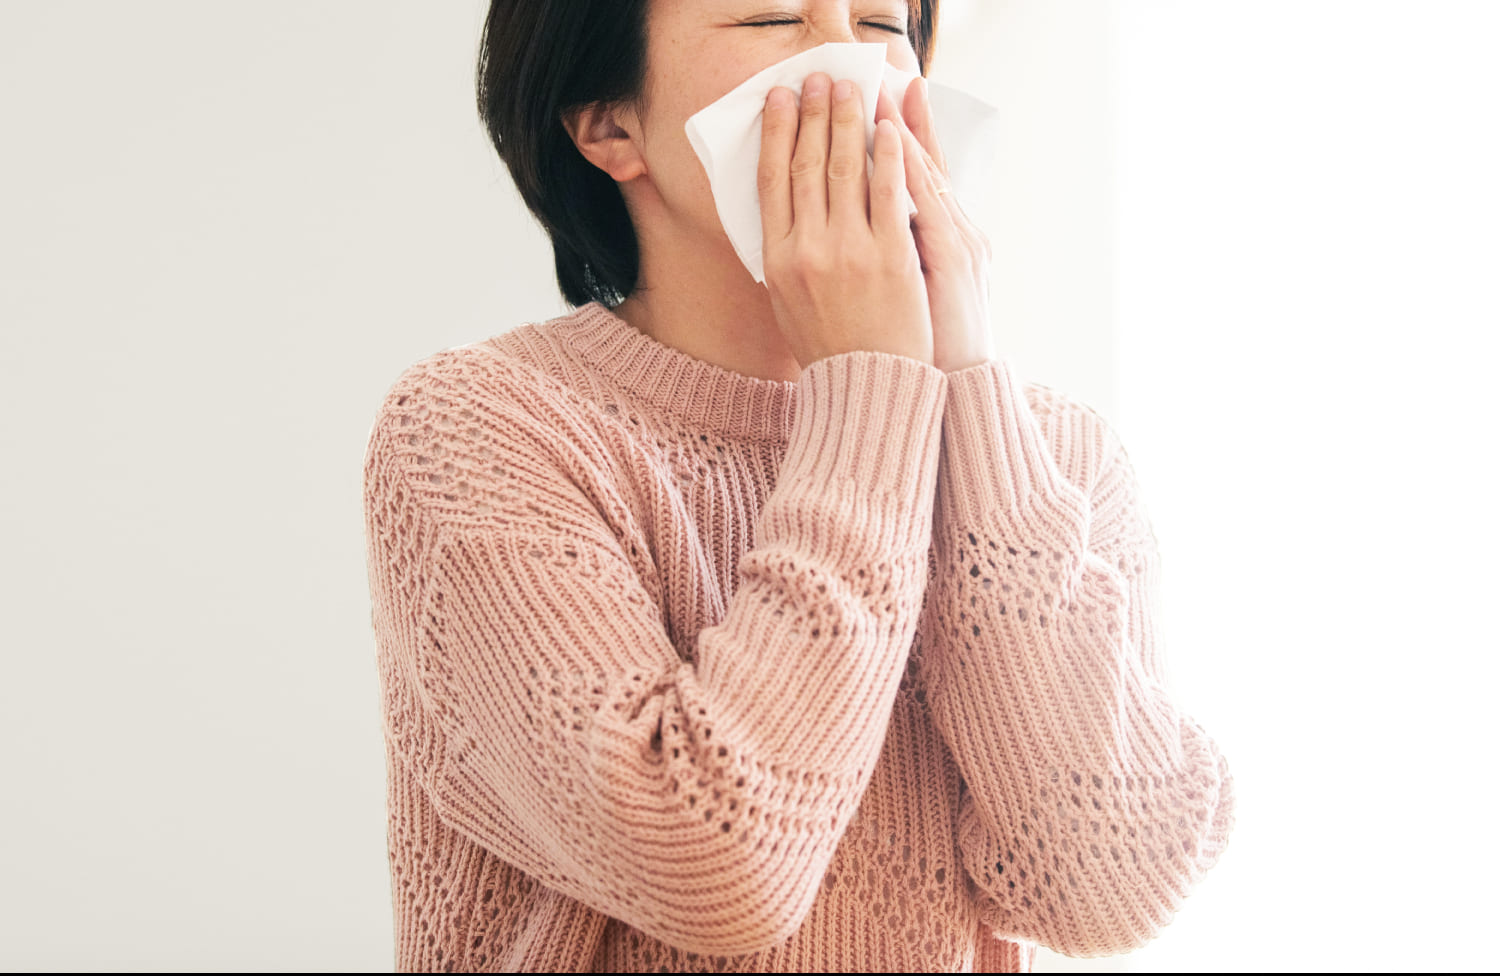 鼻づまり・匂いがわからないでお悩みの方へ「鼻づまりがなかなか治らない」「匂いがわかりづらくなった」といった鼻症状に悩まされていませんか？このような症状の原因や治療法について、正しい知識を身に付け、日常生活を快適に過ごしましょう。